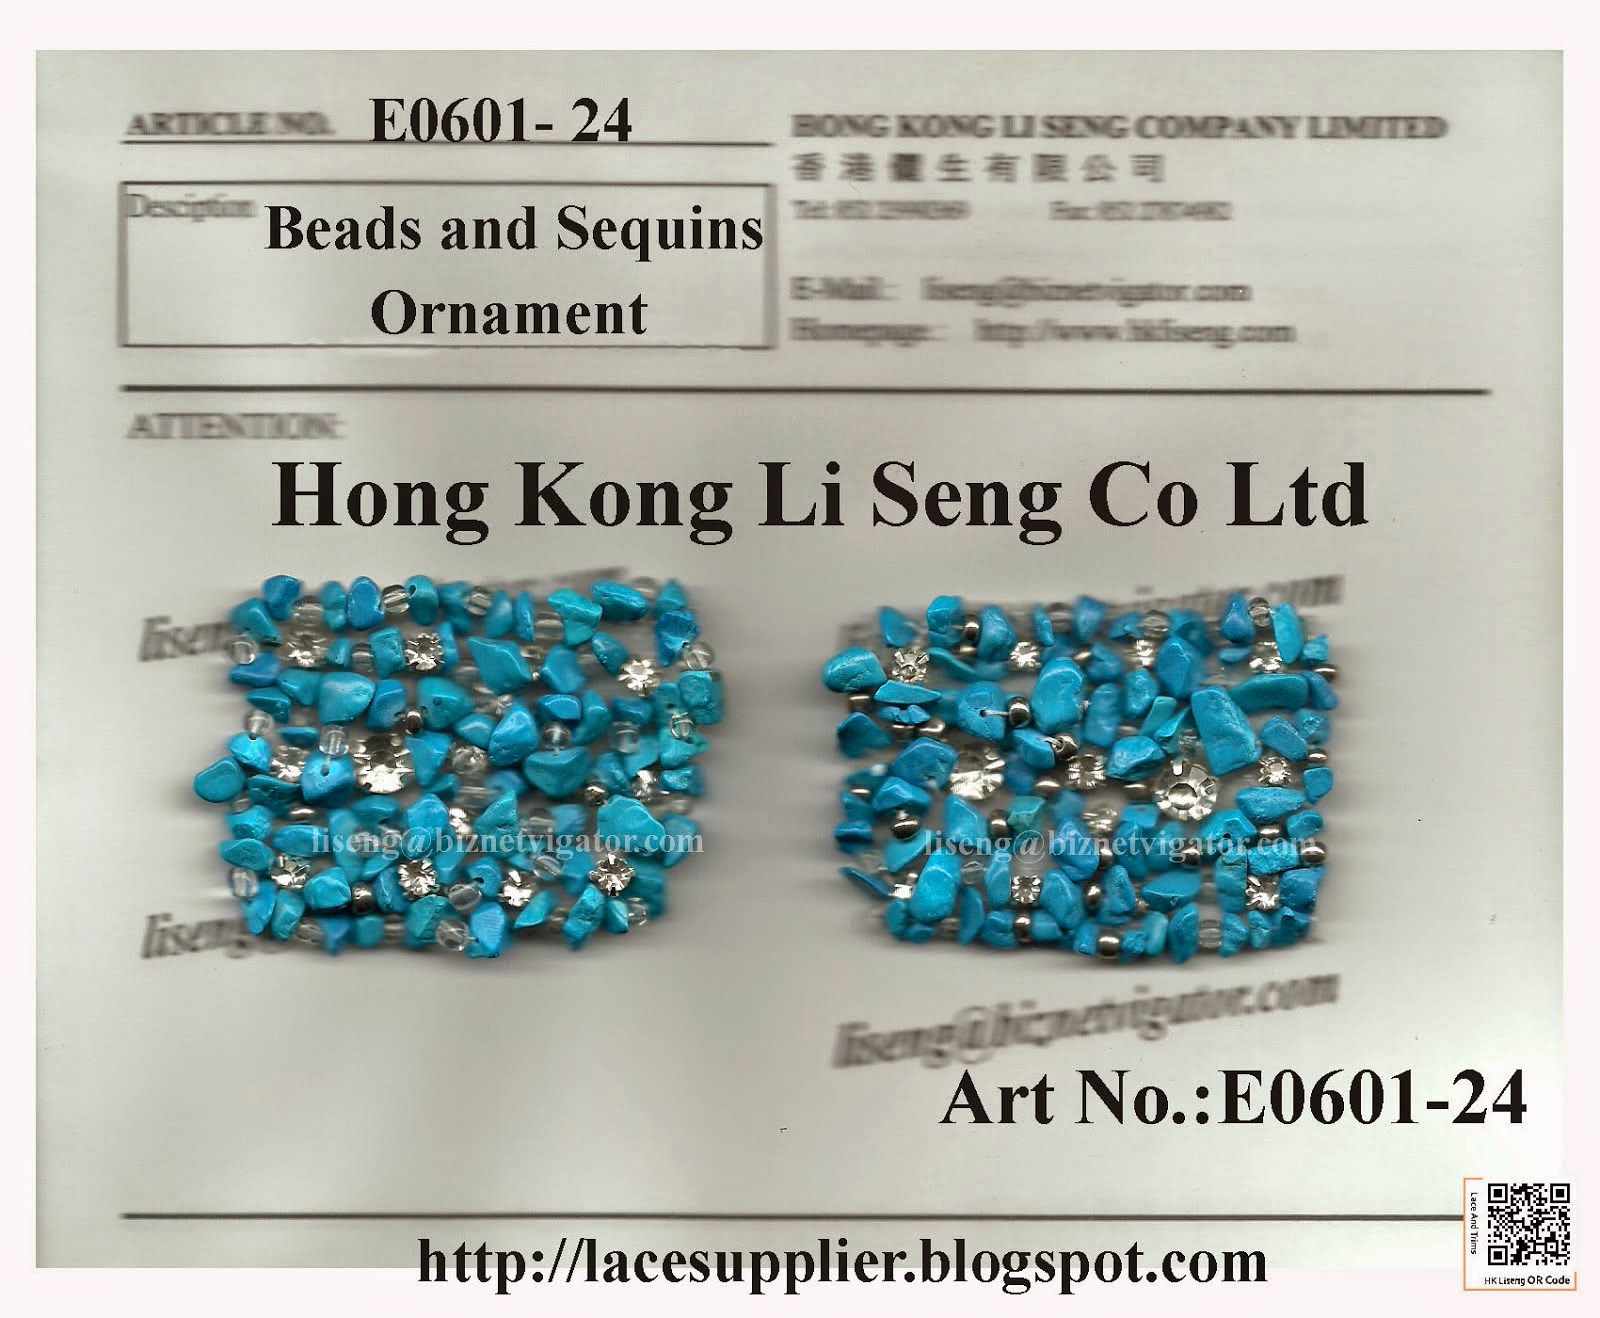 Beads and Sequins Ornament Manufacturer Wholesaler and Supplier - Hong Kong Li Seng Co Ltd